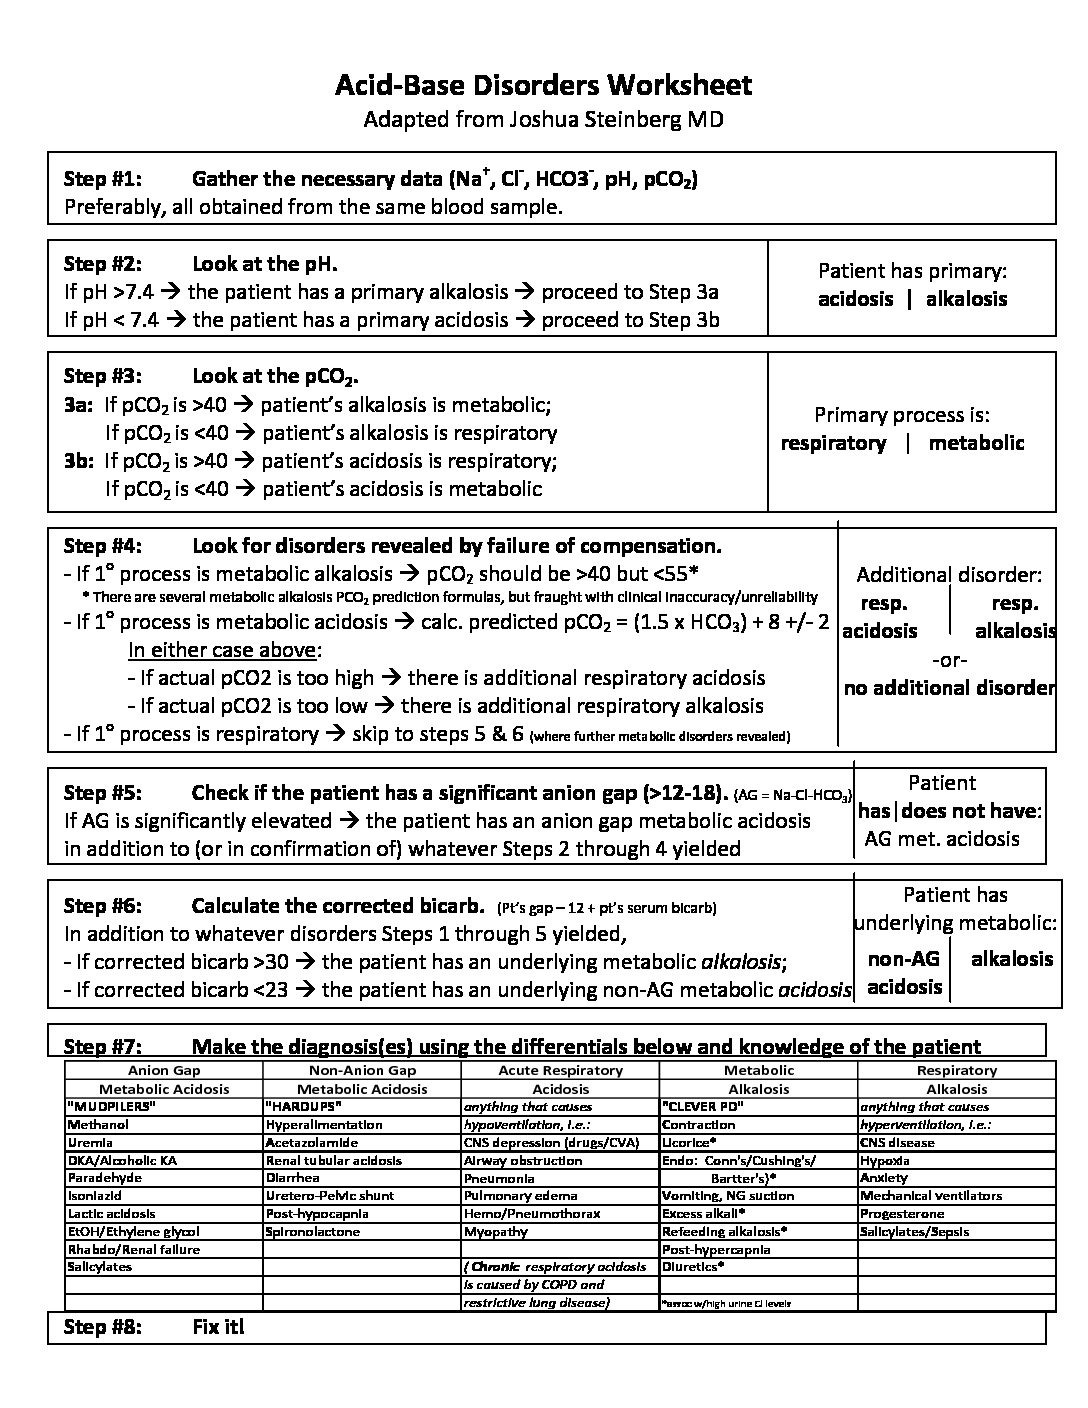 Acid and Base Worksheet Acid Base Disorders Worksheet Archives the Medical Media